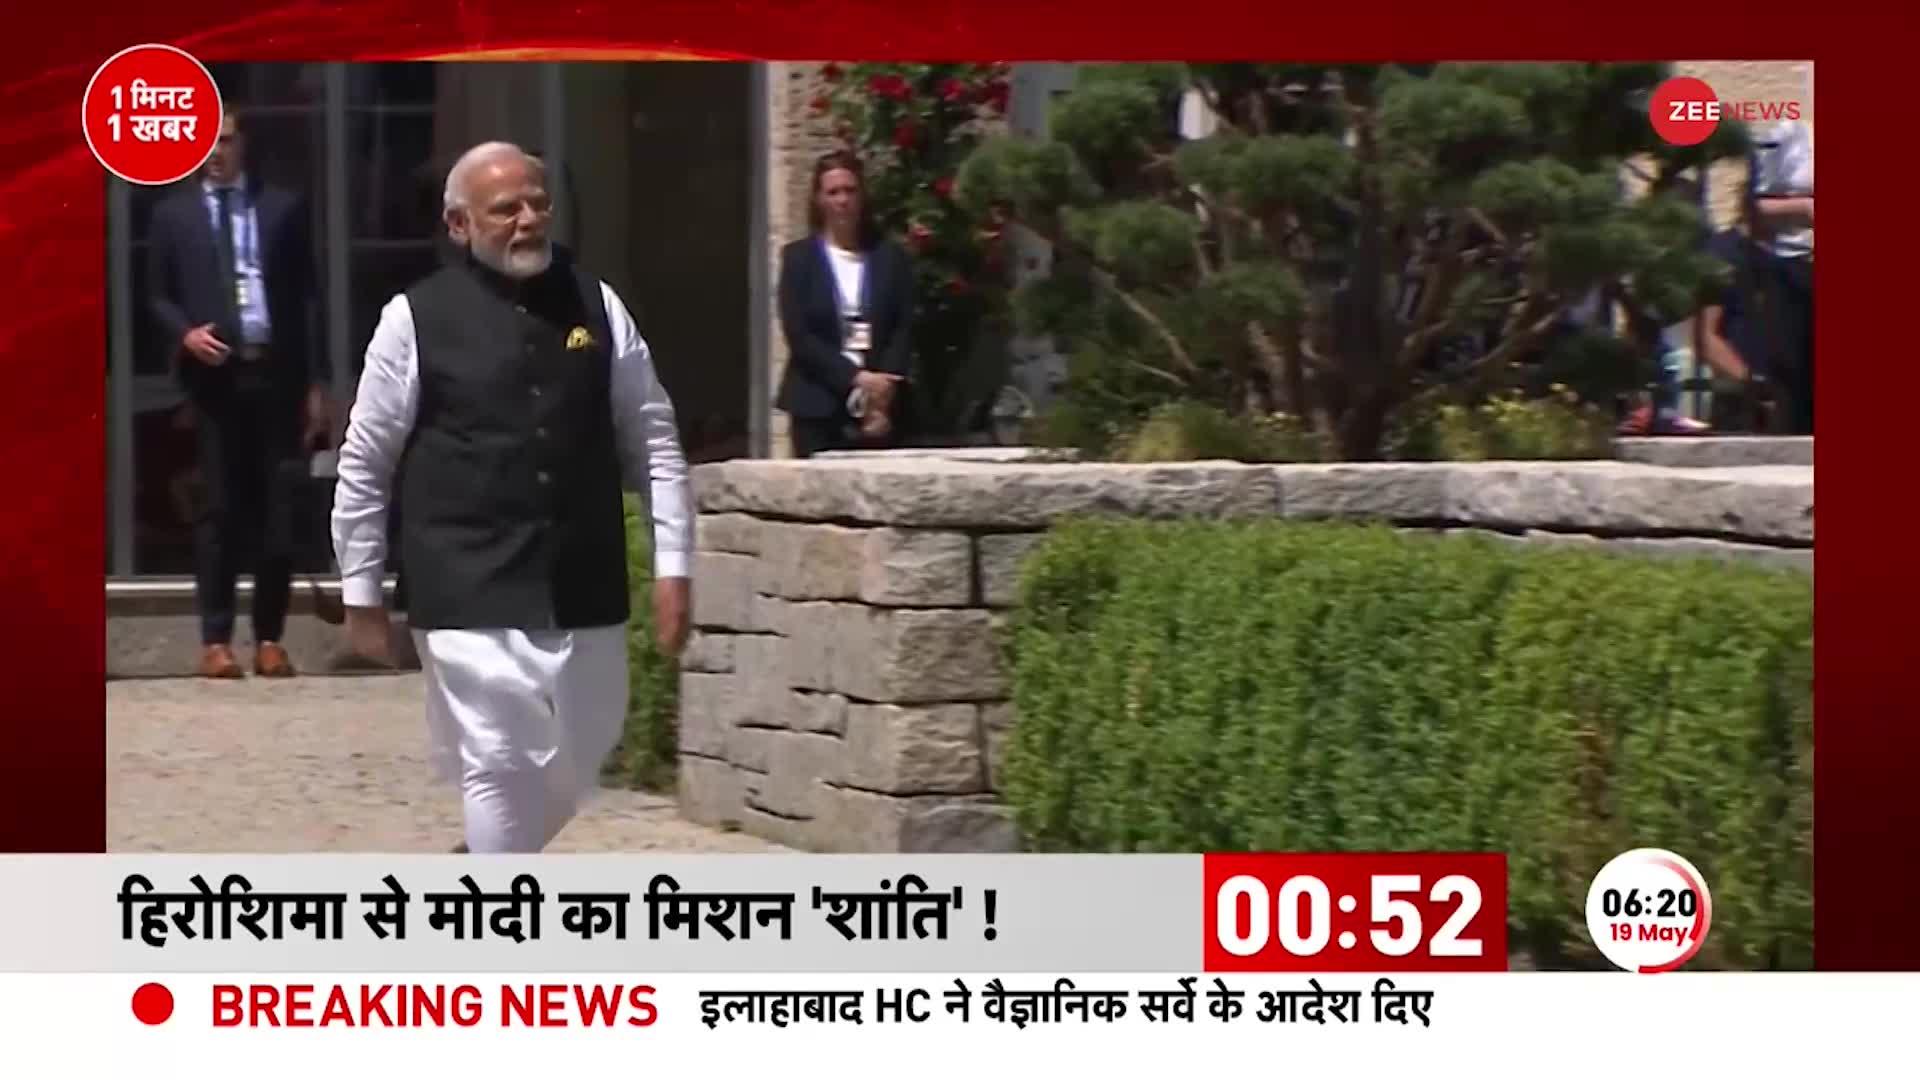 PM Modi visit Japan: आज जापान रवाना होंगे PM मोदी, G7 समिट में होंगे शामिल